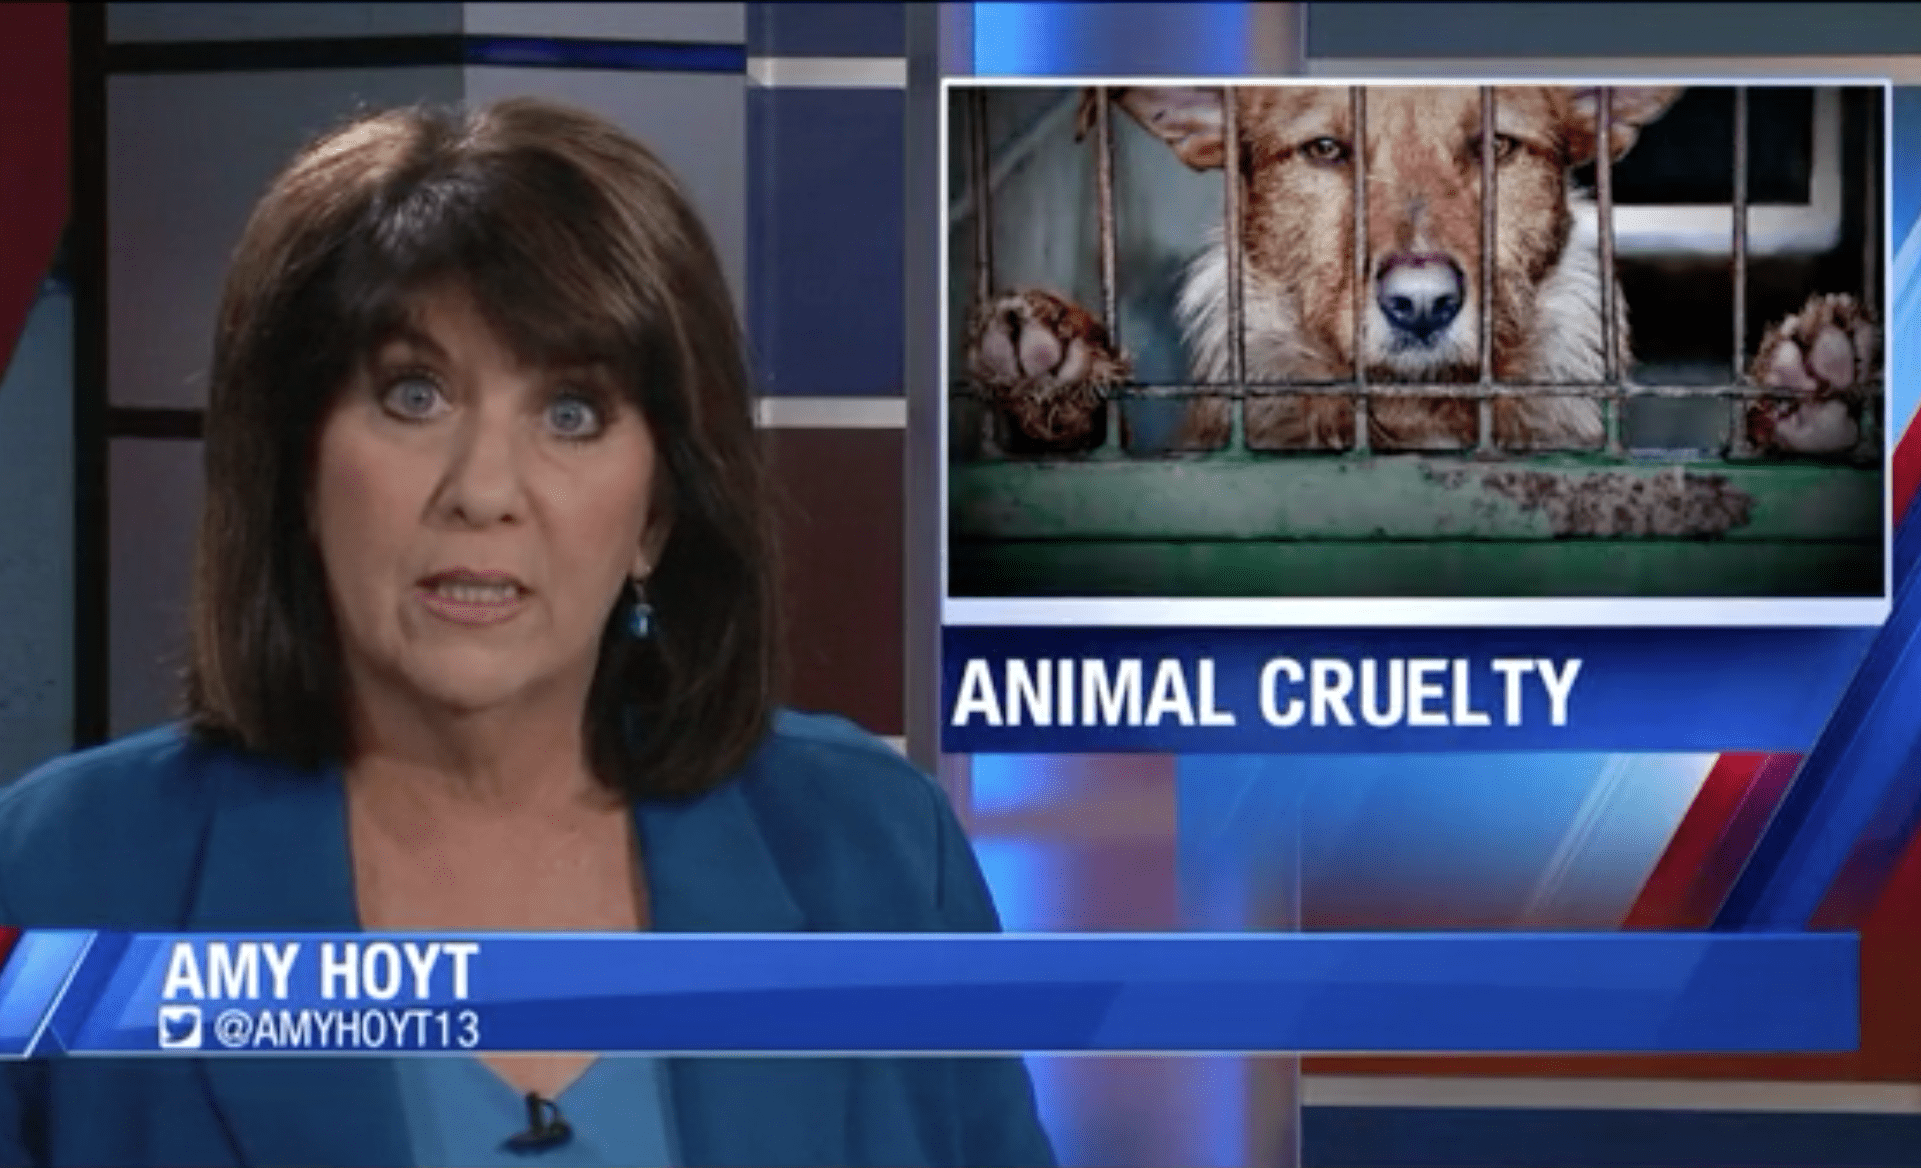 Amy Hoyt reports on Animal Cruelty